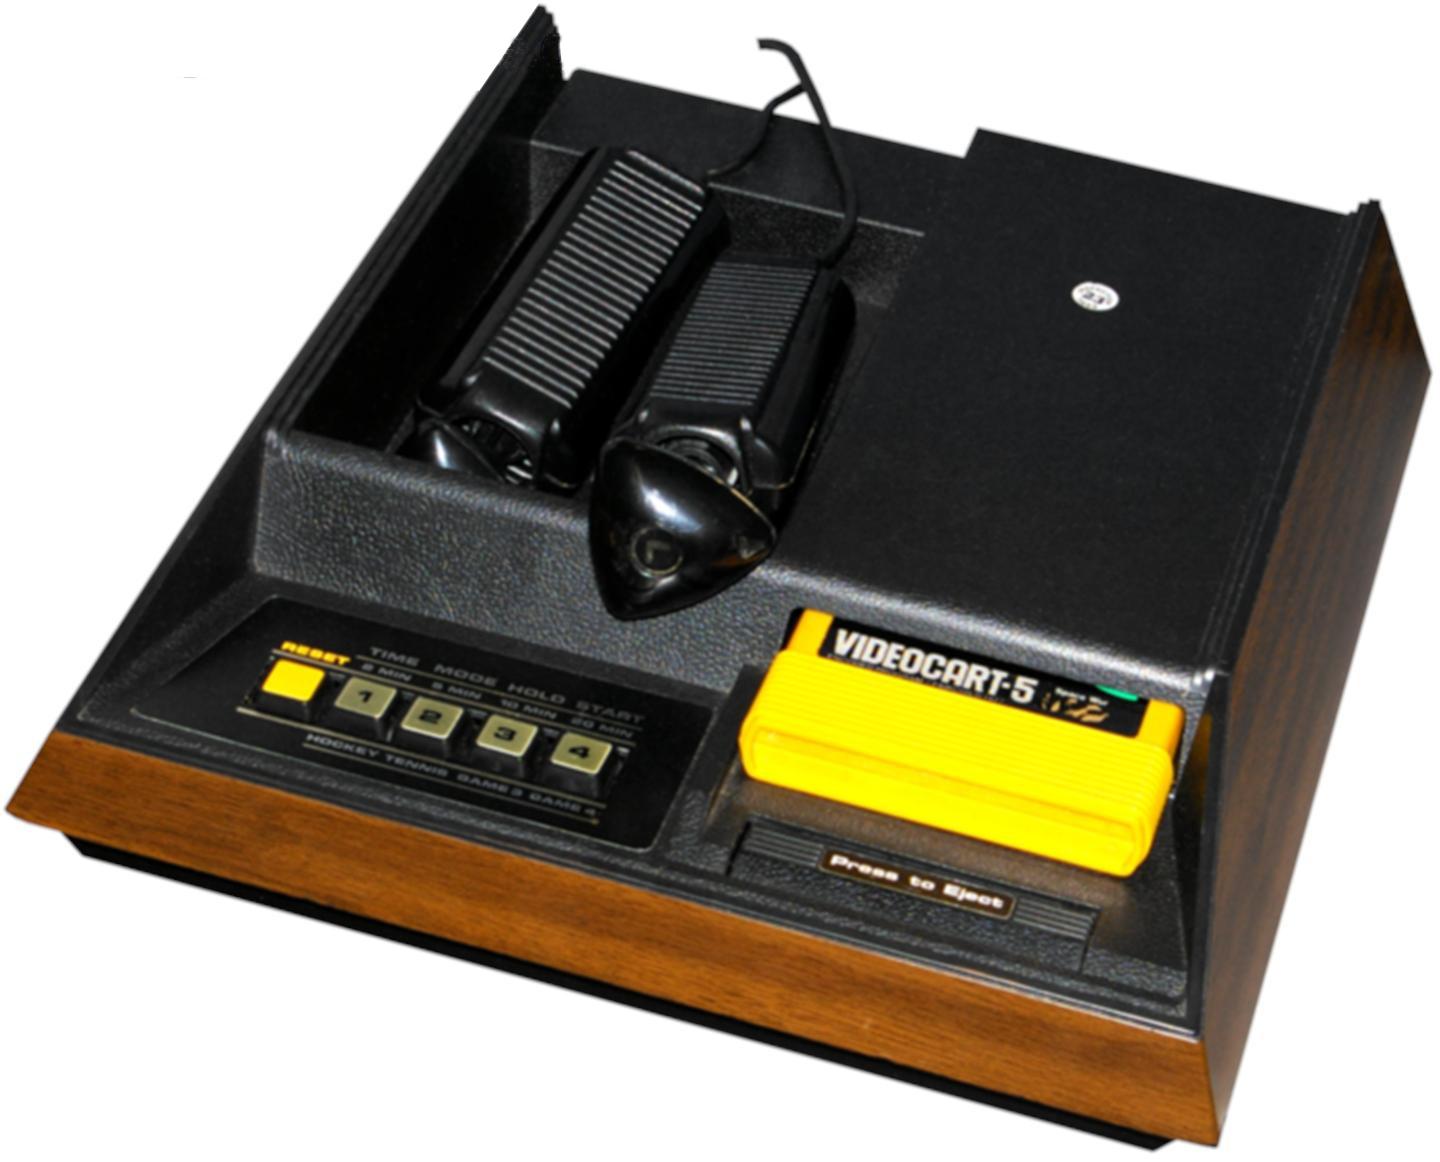 Fairchild Channel F., o primeiro videogames com cartucho da história